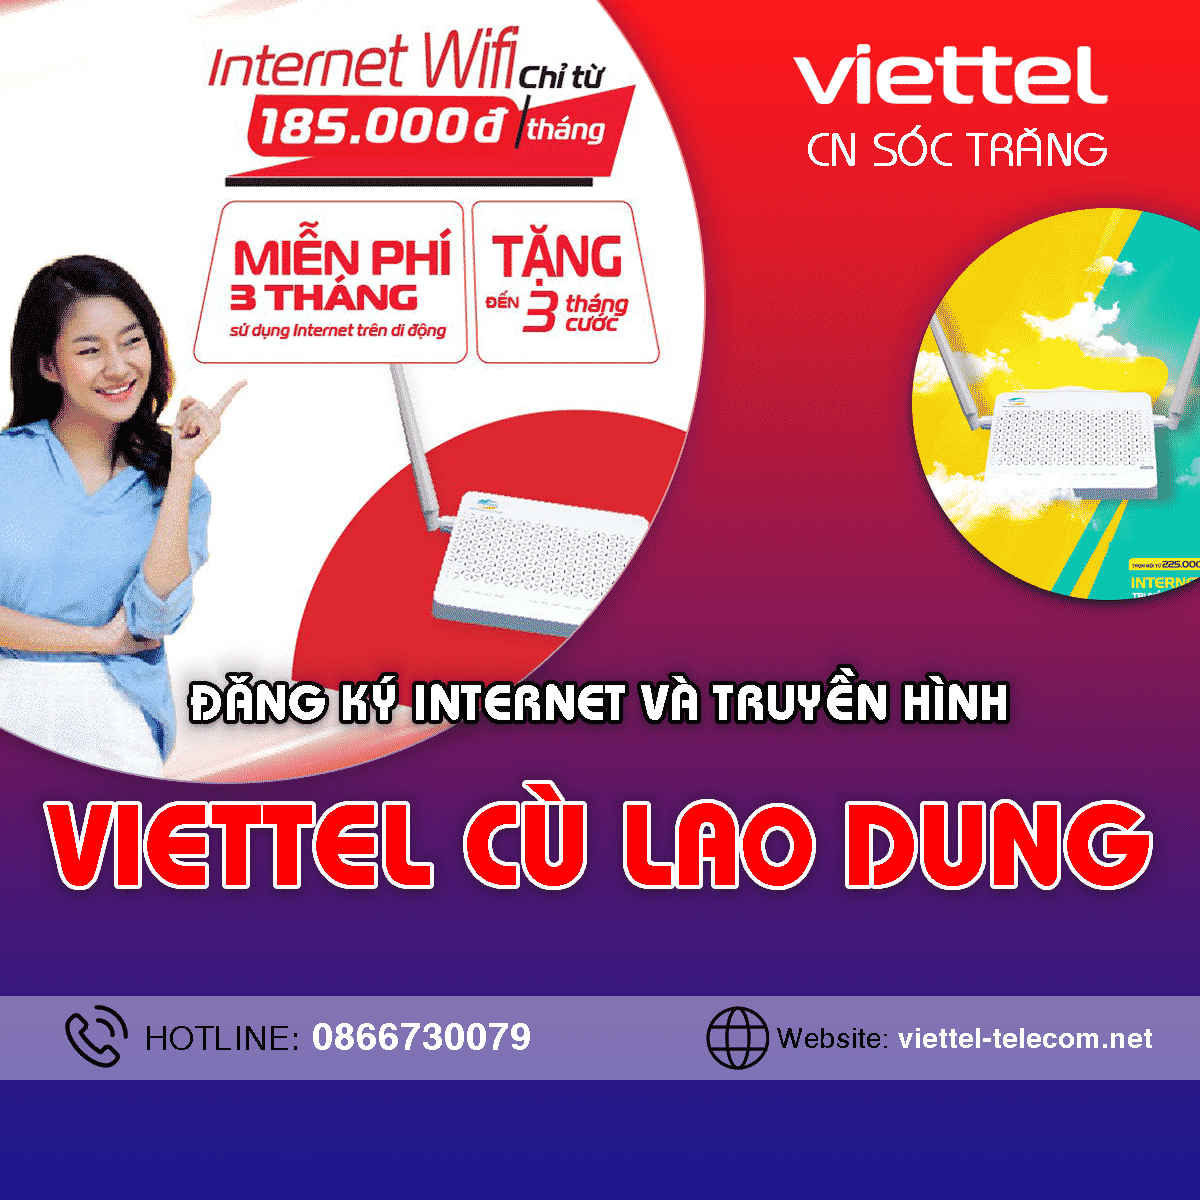 Đăng ký lắp mạng Internet + Truyền hình Viettel Cù Lao Dung